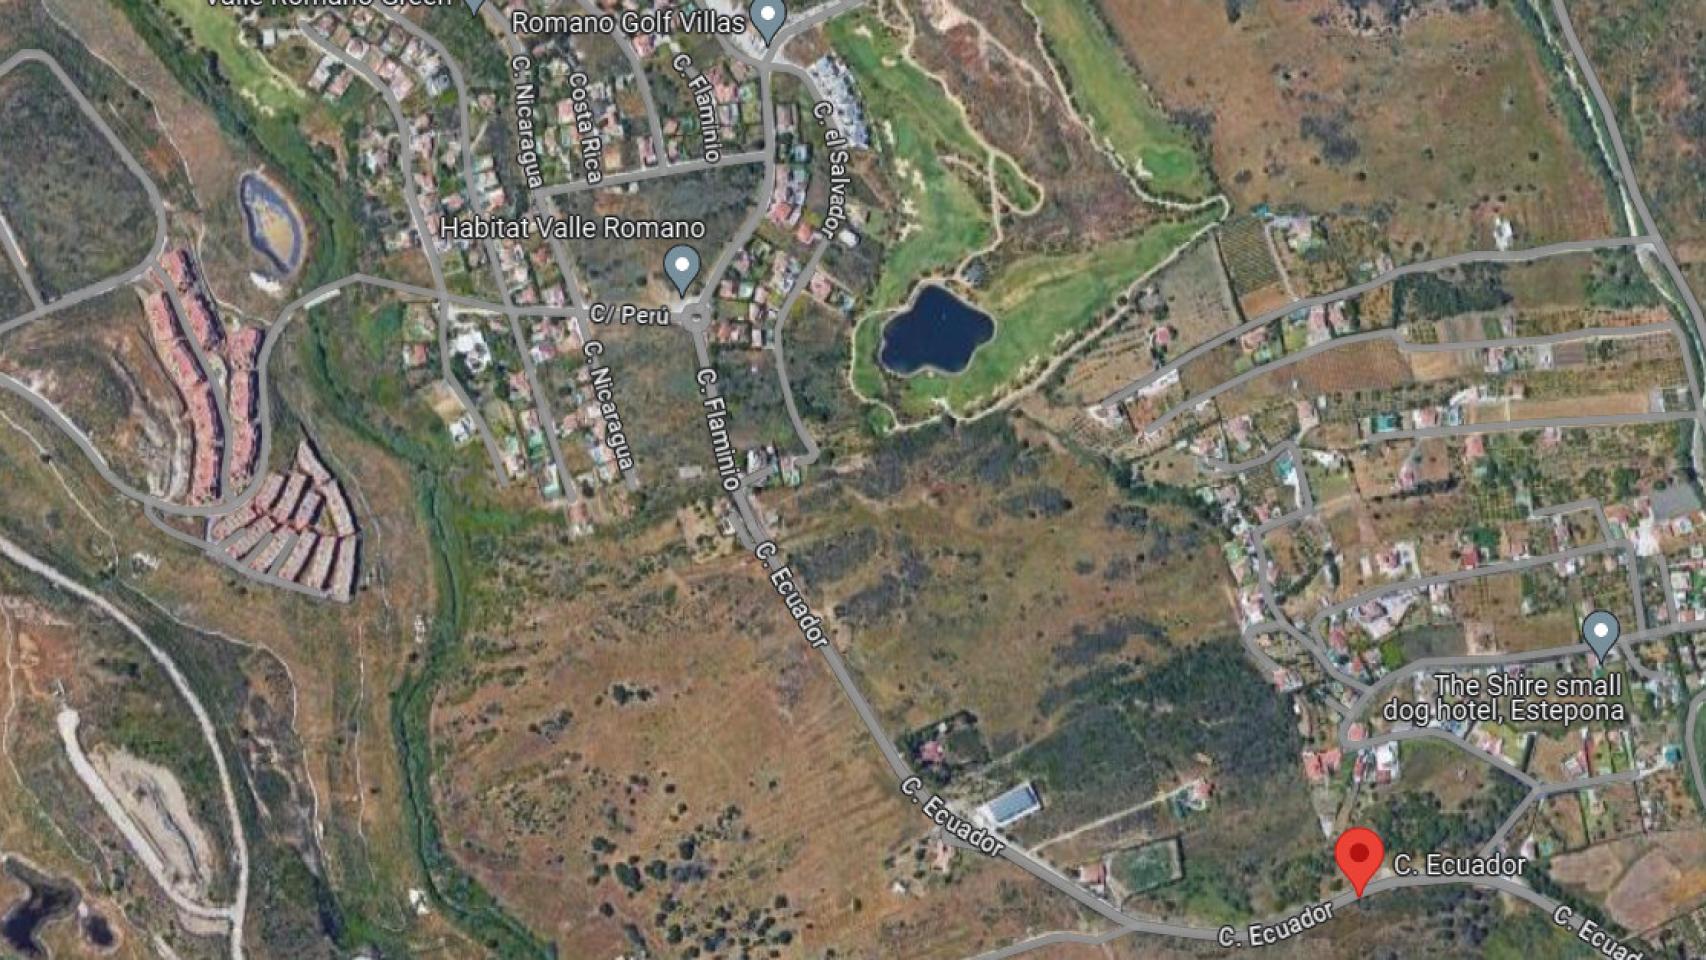 Vista de la zona donde se localiza los terrenos de Estepona que son objeto de subasta.